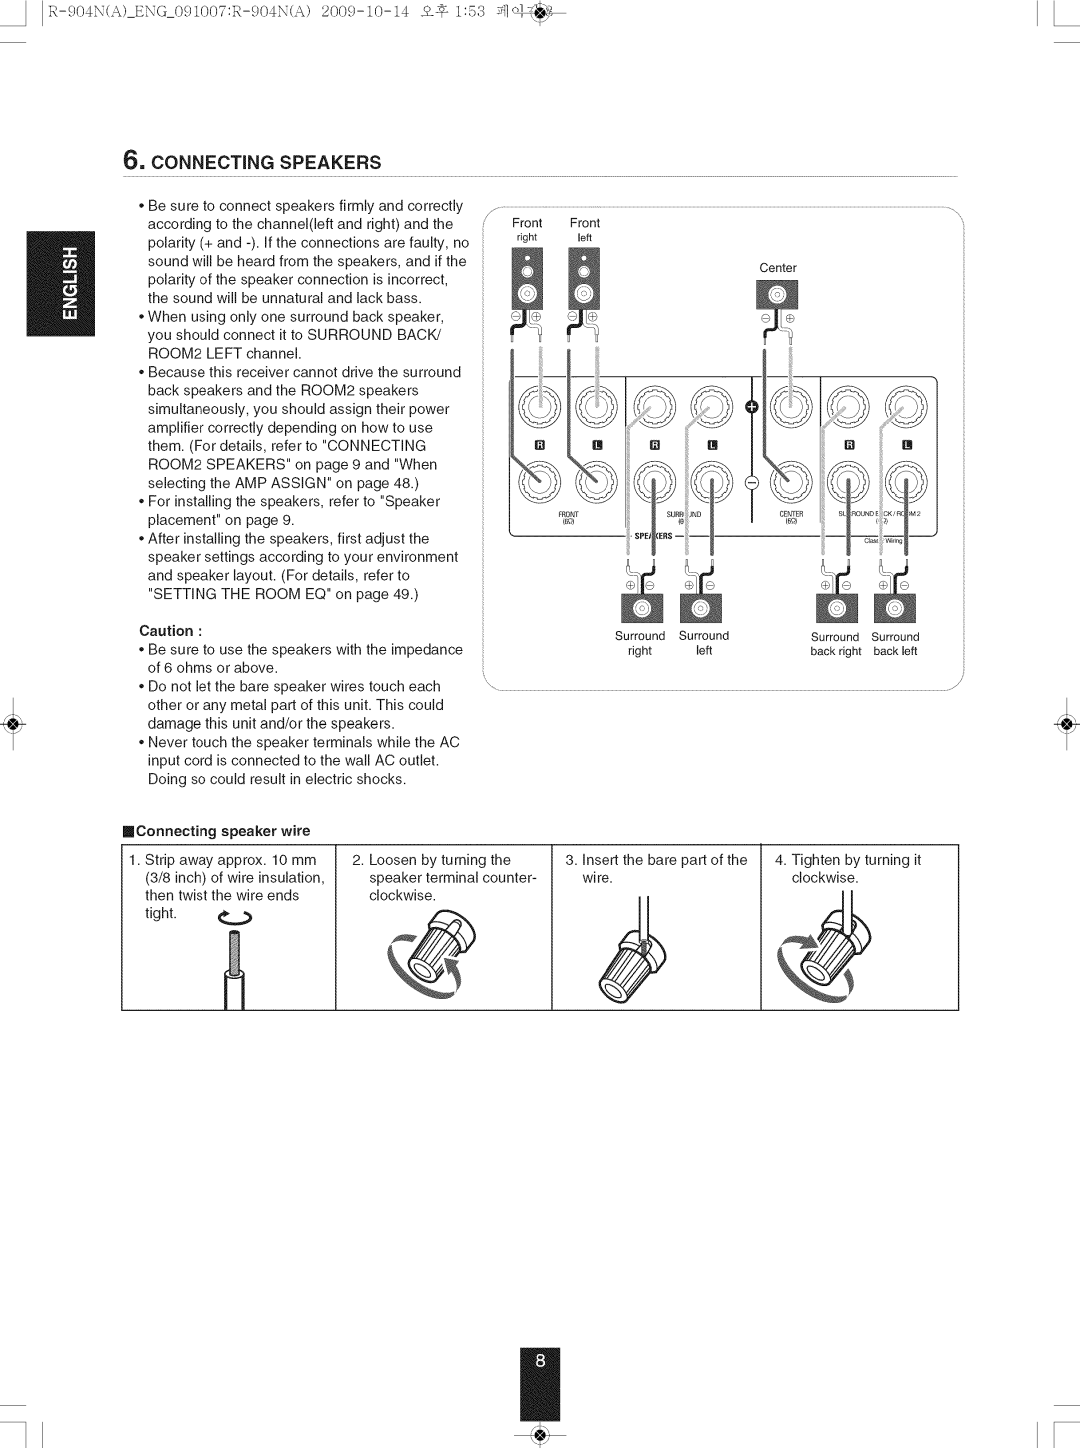 Sherwood R-904N manual 6, CONNECTING SPEAKERS 